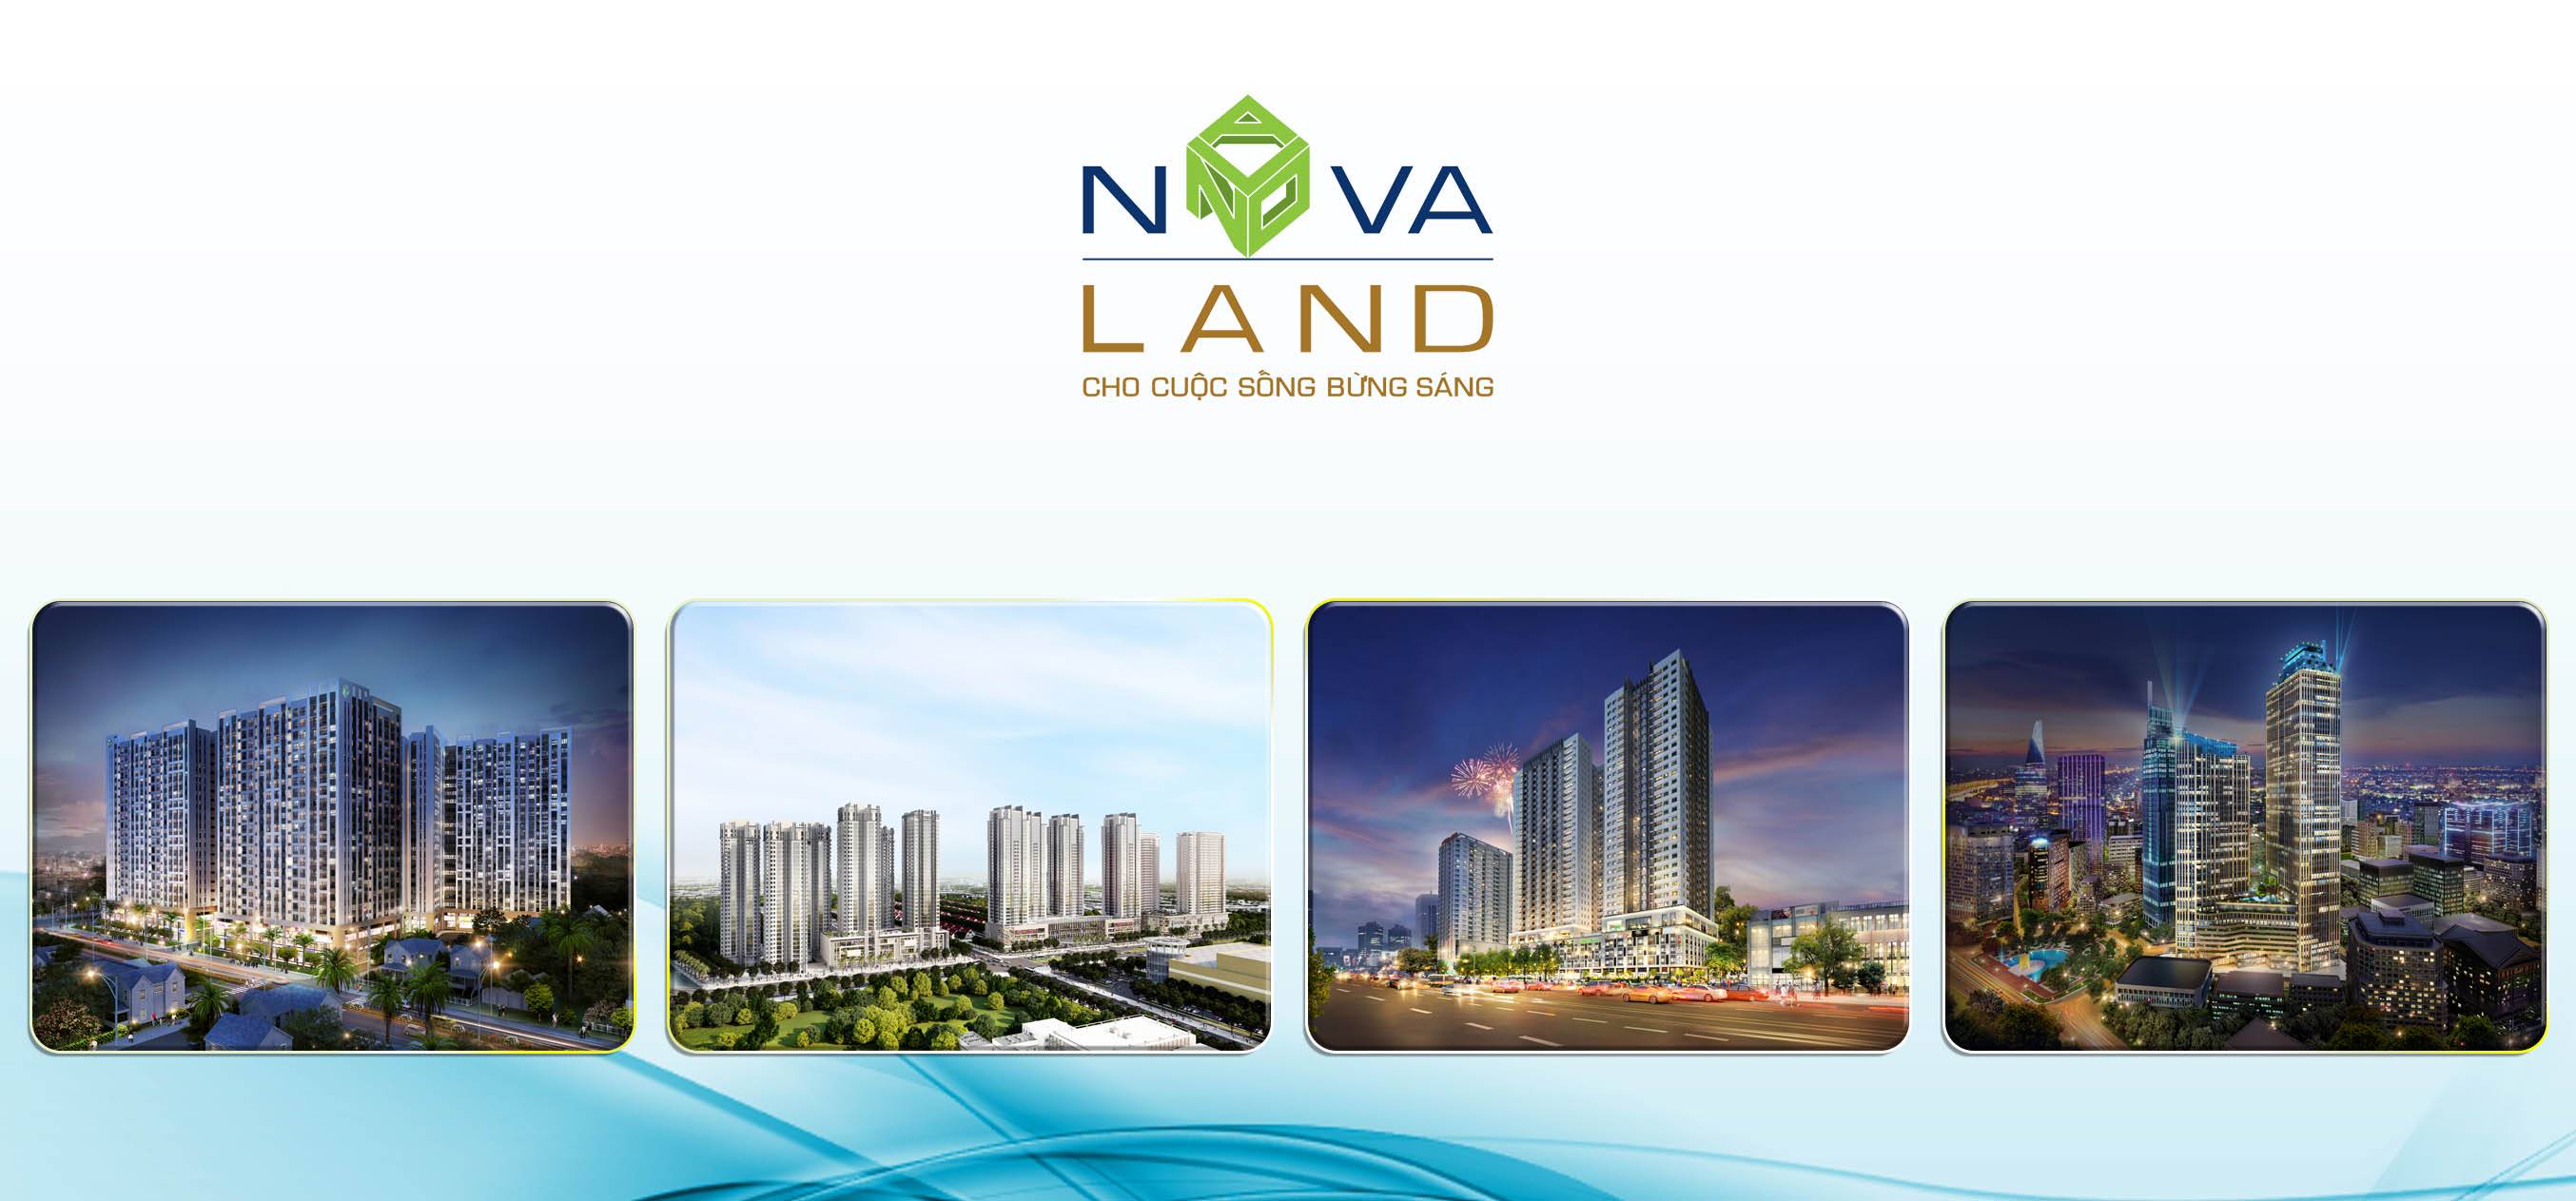 Hàng loạt dự án đang và sắp được triển khai của Tập đoàn Novaland “khủng” cỡ nào?